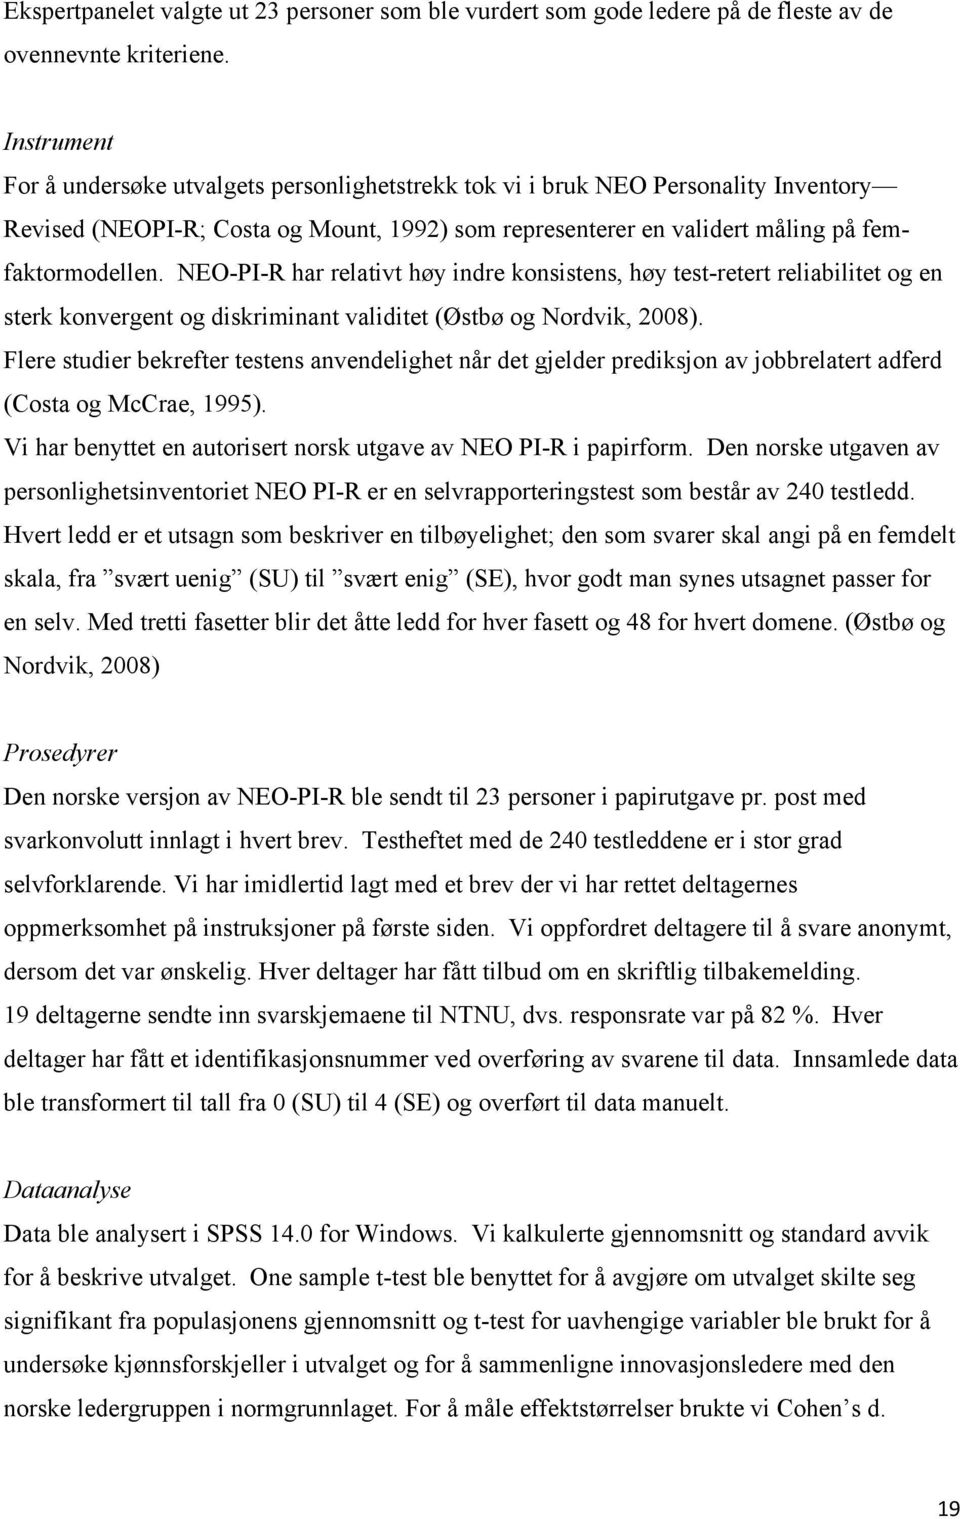 NEO-PI-R har relativt høy indre konsistens, høy test-retert reliabilitet og en sterk konvergent og diskriminant validitet (Østbø og Nordvik, 2008).